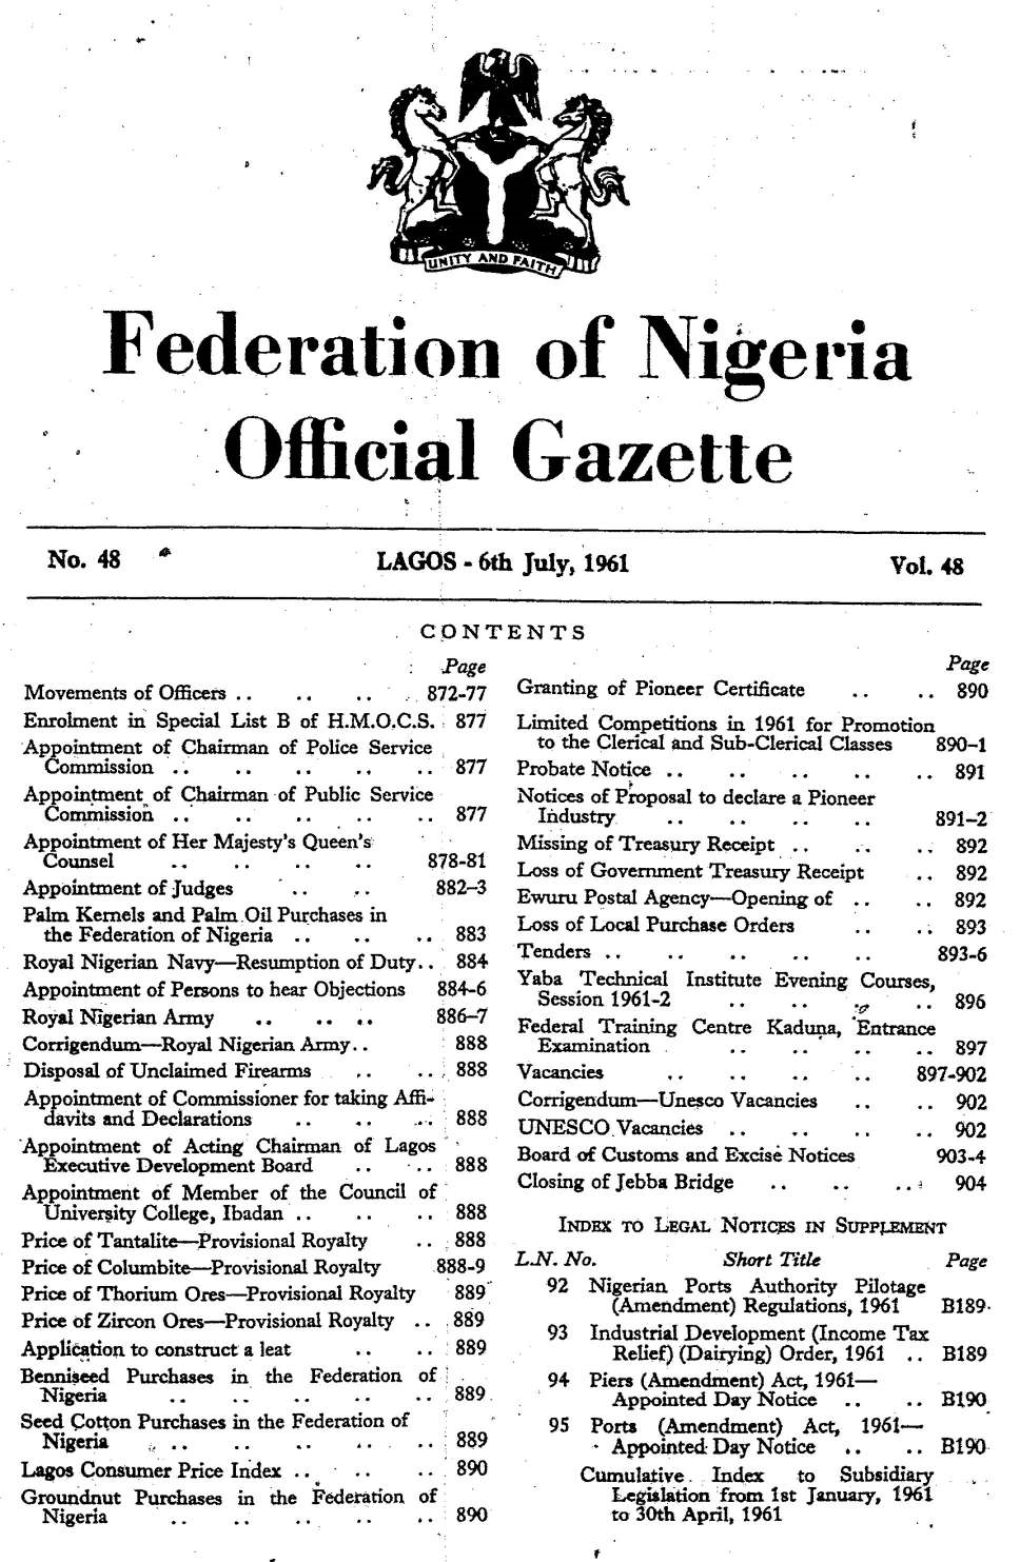 Federation of Nigeria - ‘Official Gazette